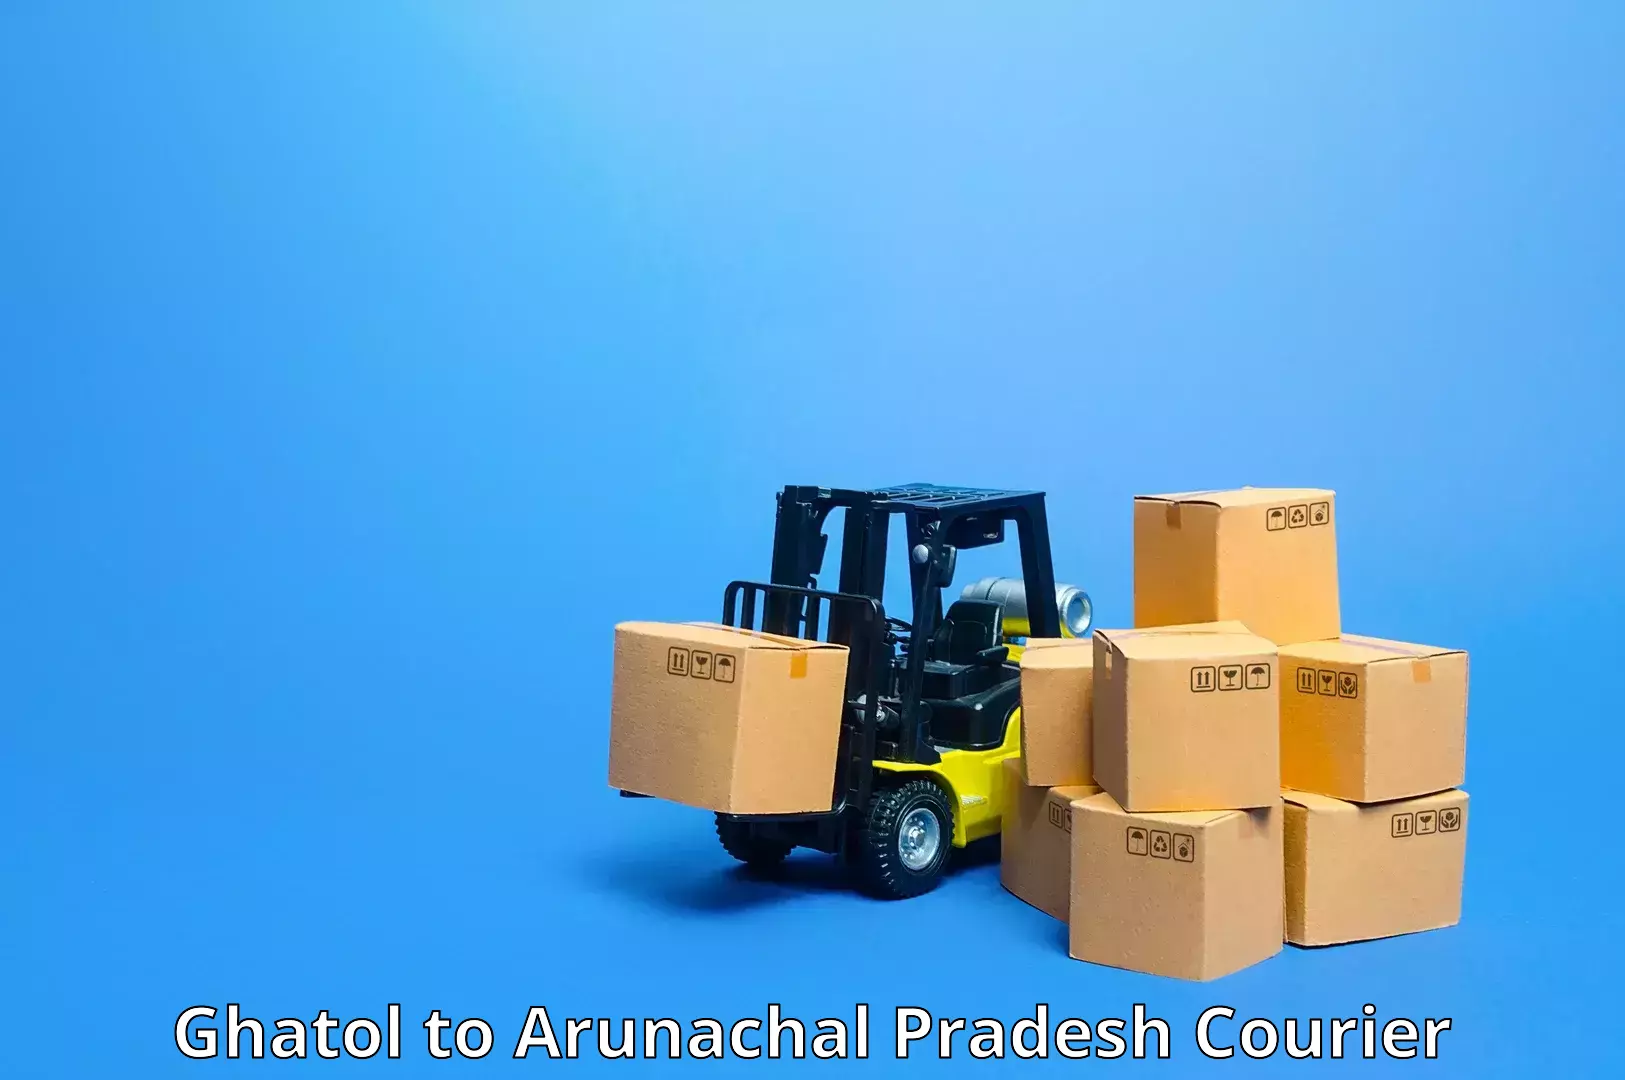 Flexible delivery schedules in Ghatol to Arunachal Pradesh